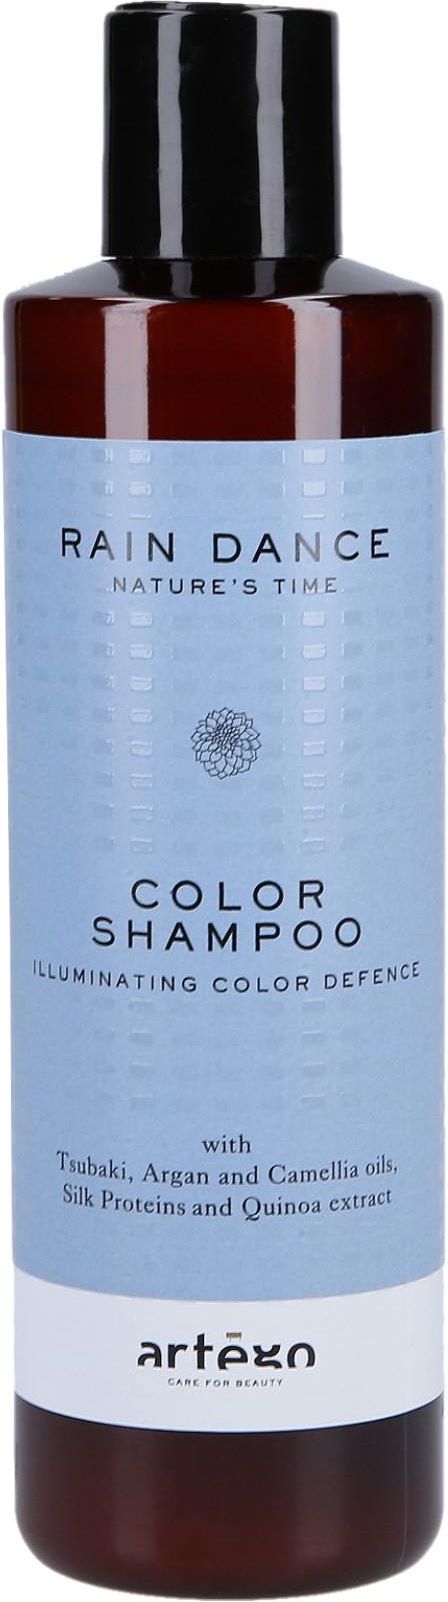 artego szampon do włosów farbowanych opinie